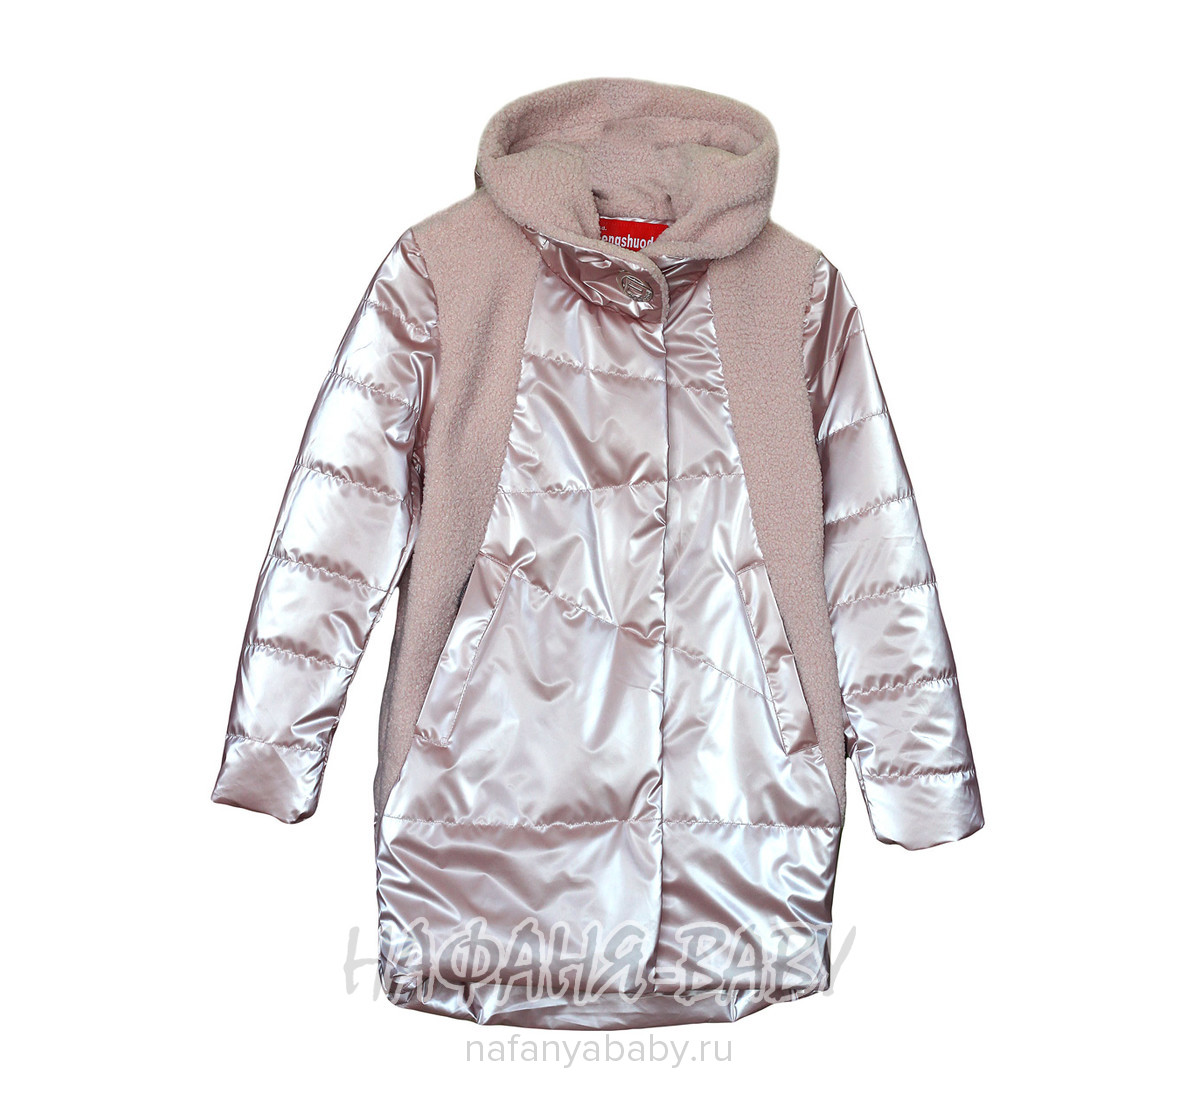 Подростковая демисезонная куртка FSD, купить в интернет магазине Нафаня. арт: 1005.